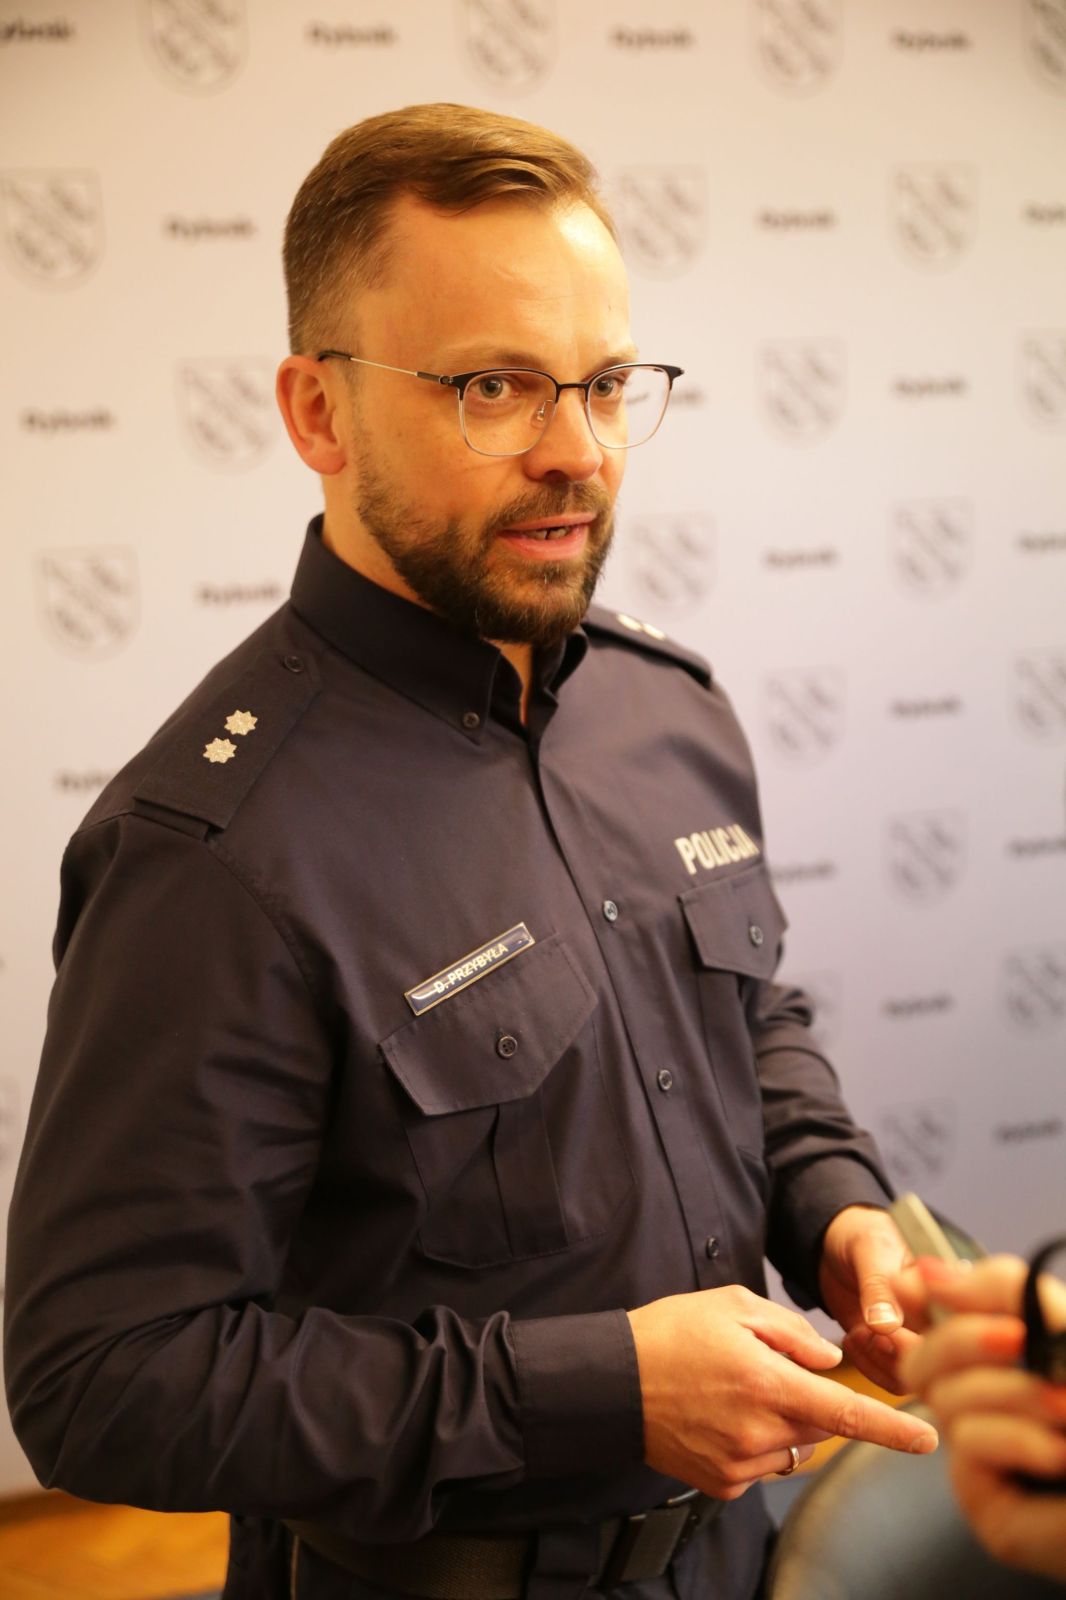 Podkomisarz Damian Przybyła, zastępca Komendanta Miejskiego Policji w Rybniku, przypomina, że policjanci nigdy nie proszą kogokolwiek o pieniądze. Zdj. WaT